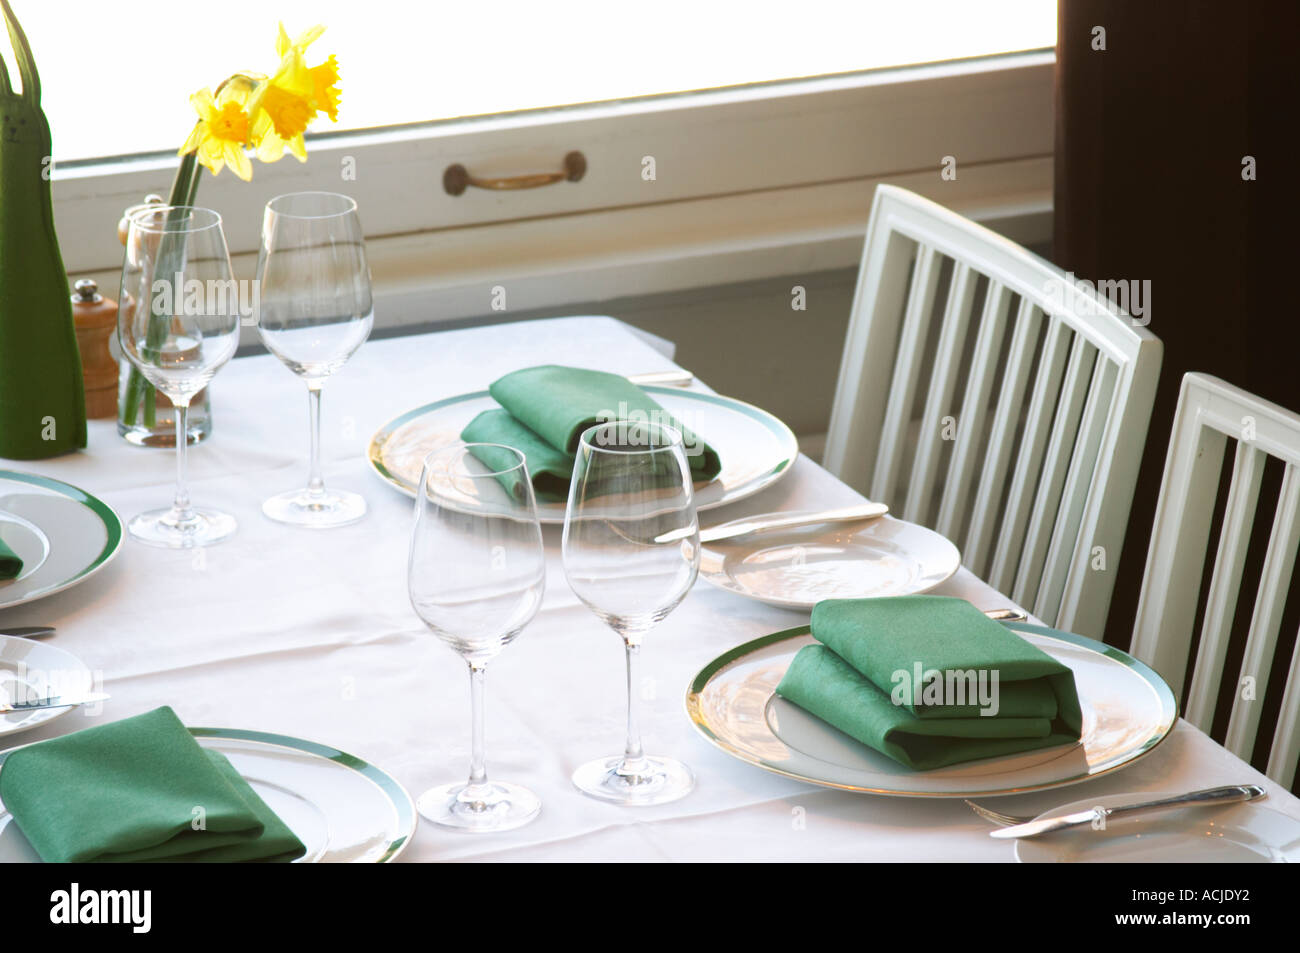 Una mesa de restaurante con manteles de lino blanco para cuatro personas,  con platos, cubiertos de plata y servilletas de color verde y amarillo  Narciso Pascual lily flor sobre la mesa. Ulriksdal